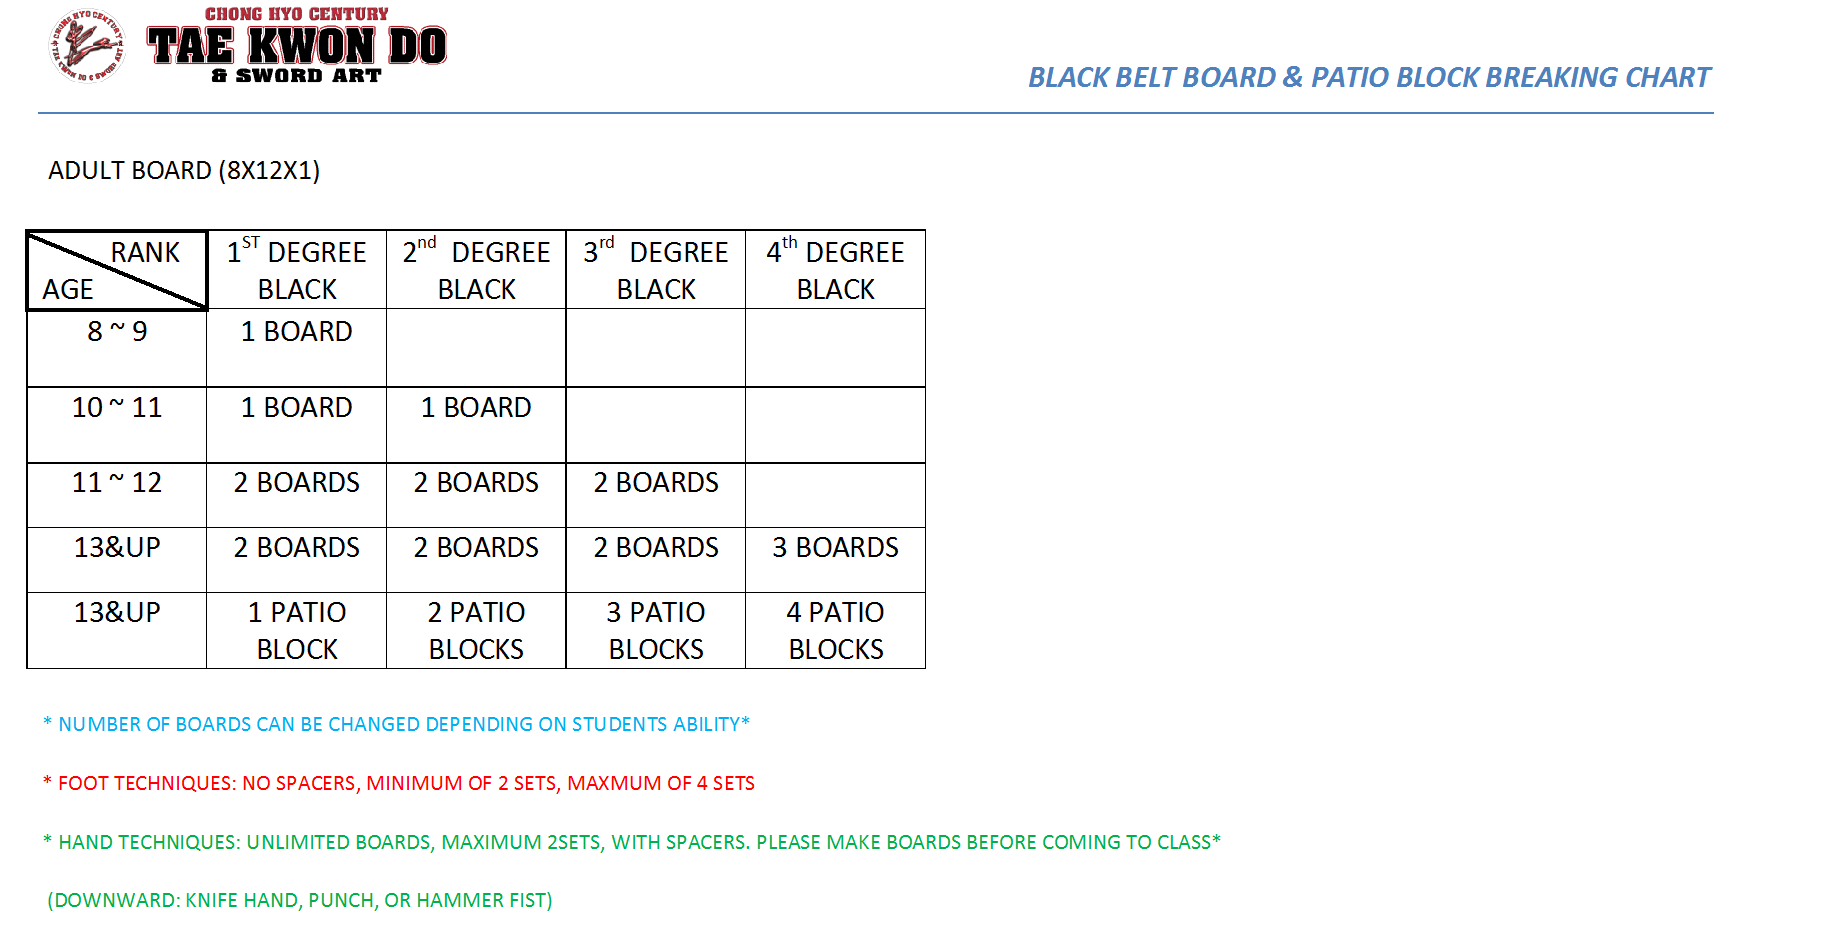 BLACK BELT BOARD & PATIO BLOCKB BREAKING CHART